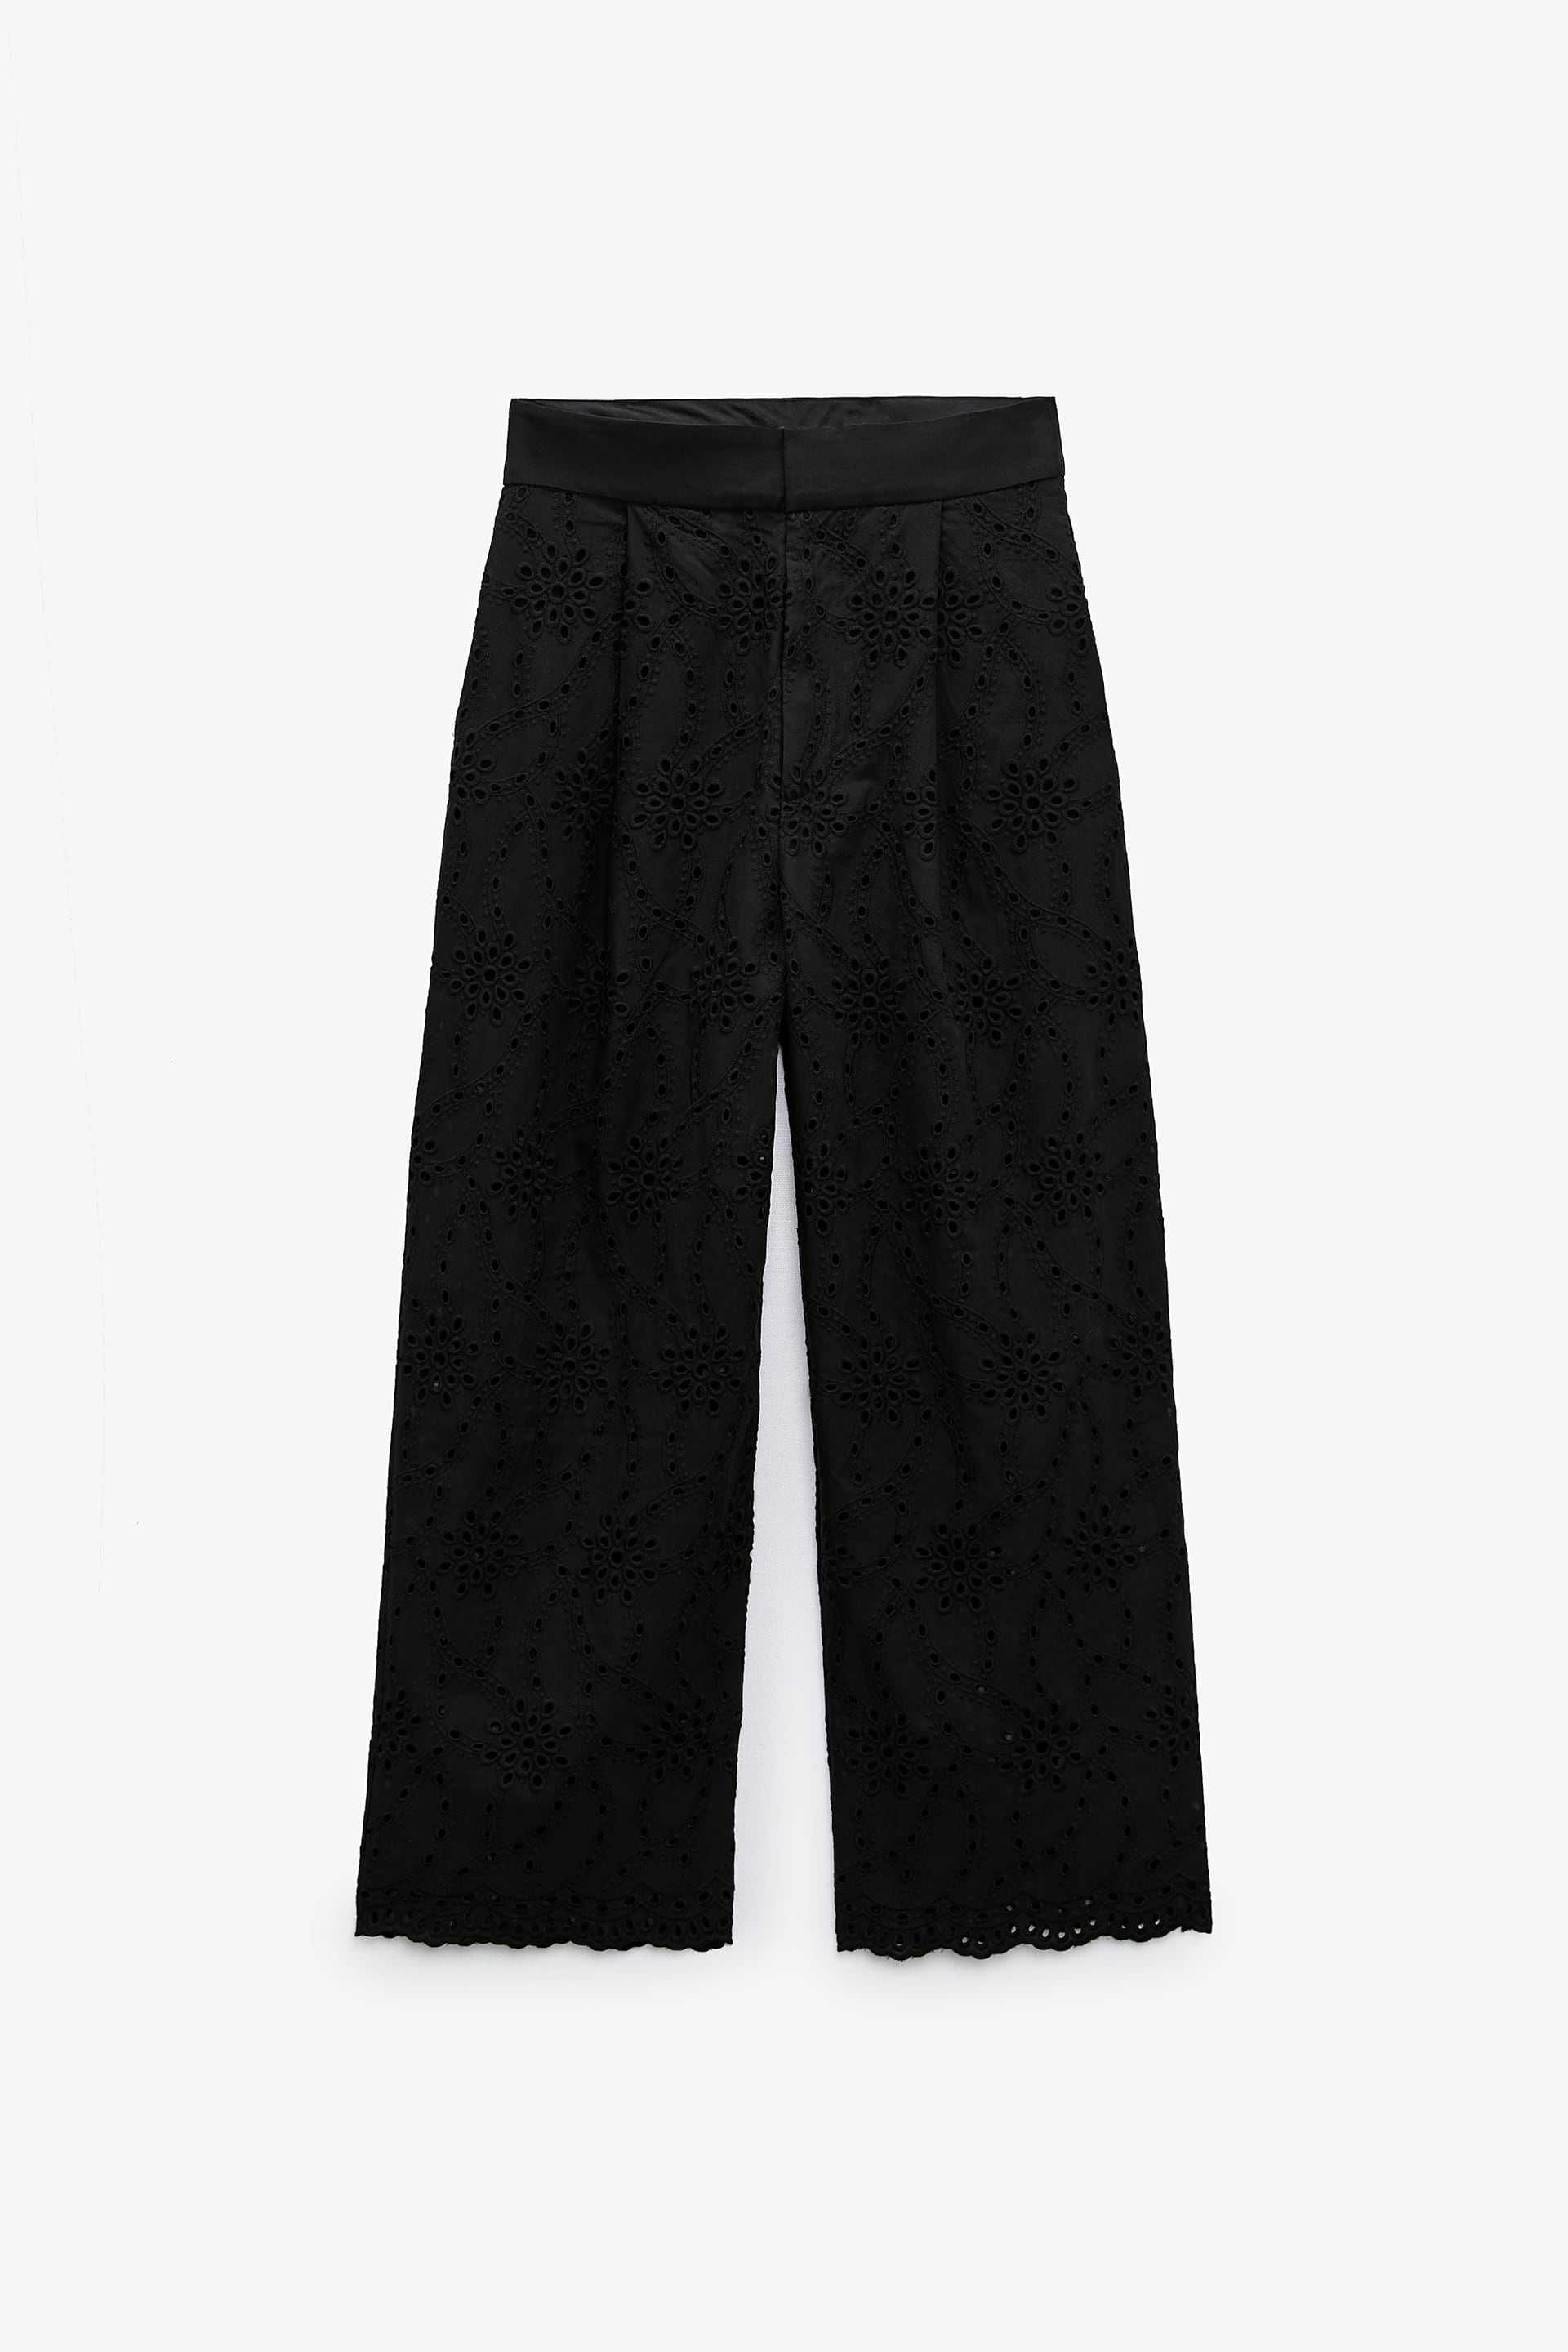 Pantaloni Zara XS broderie negri nou